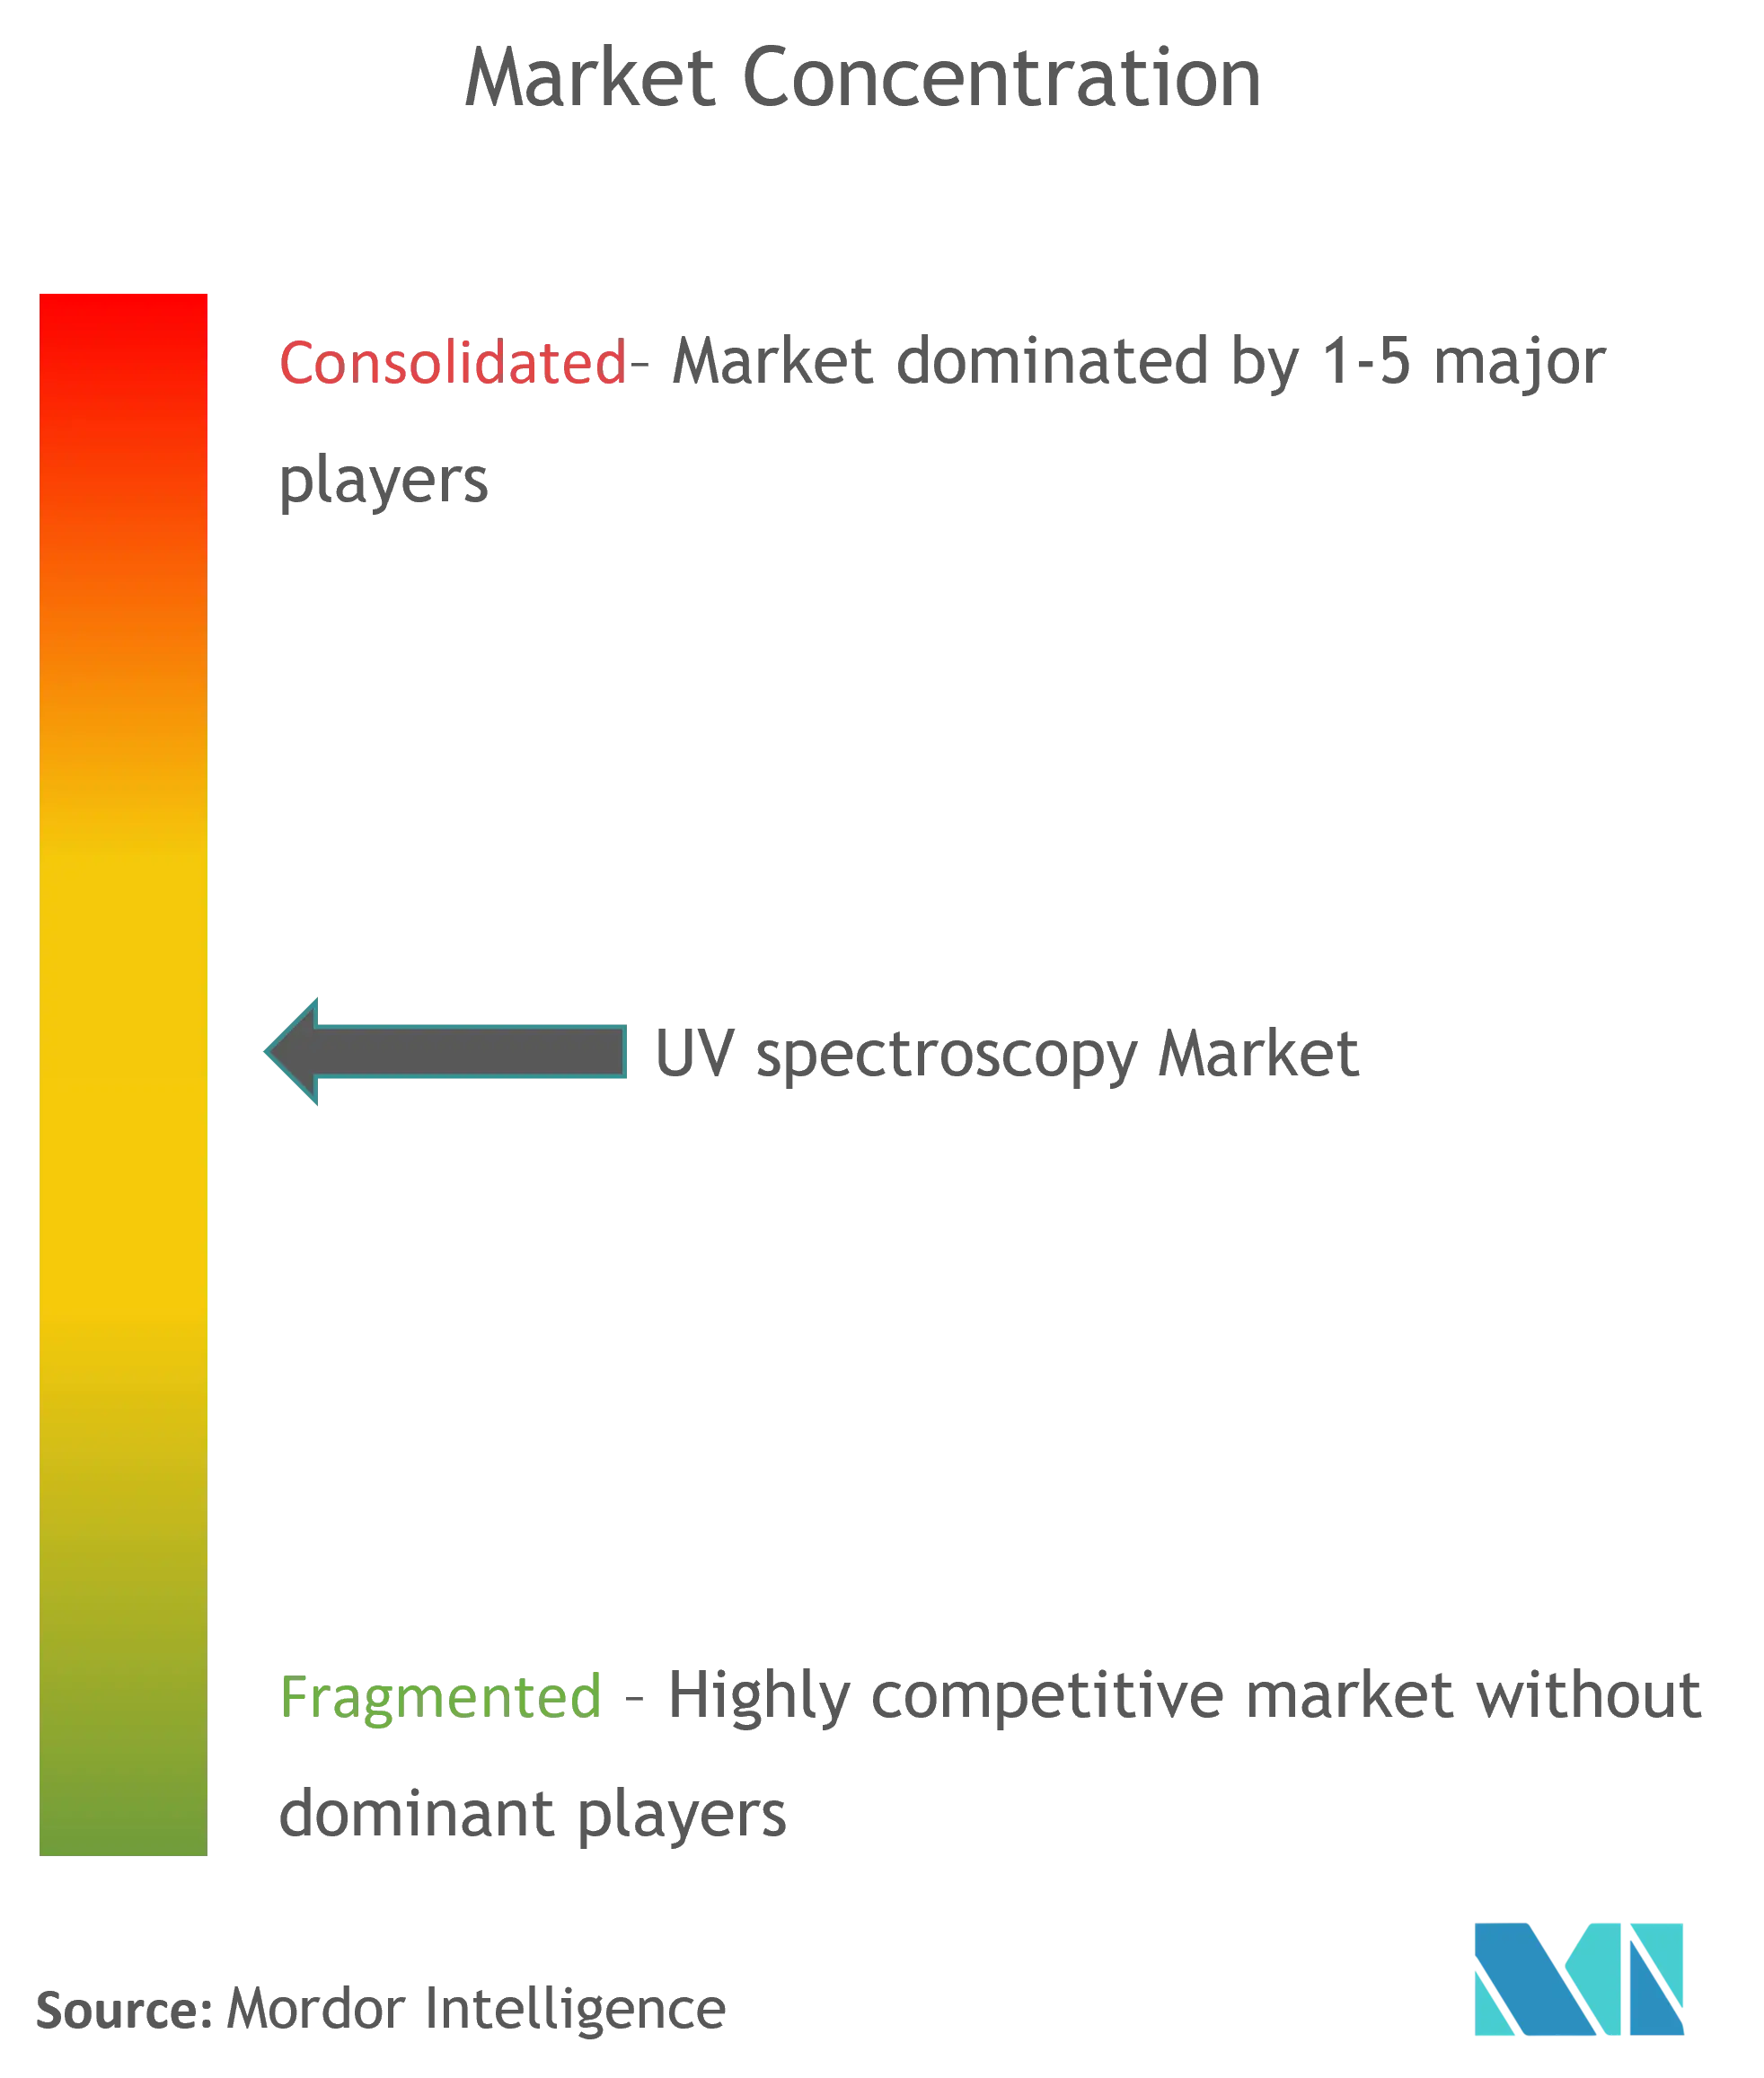 Global UV Spectroscopy Market Concentration